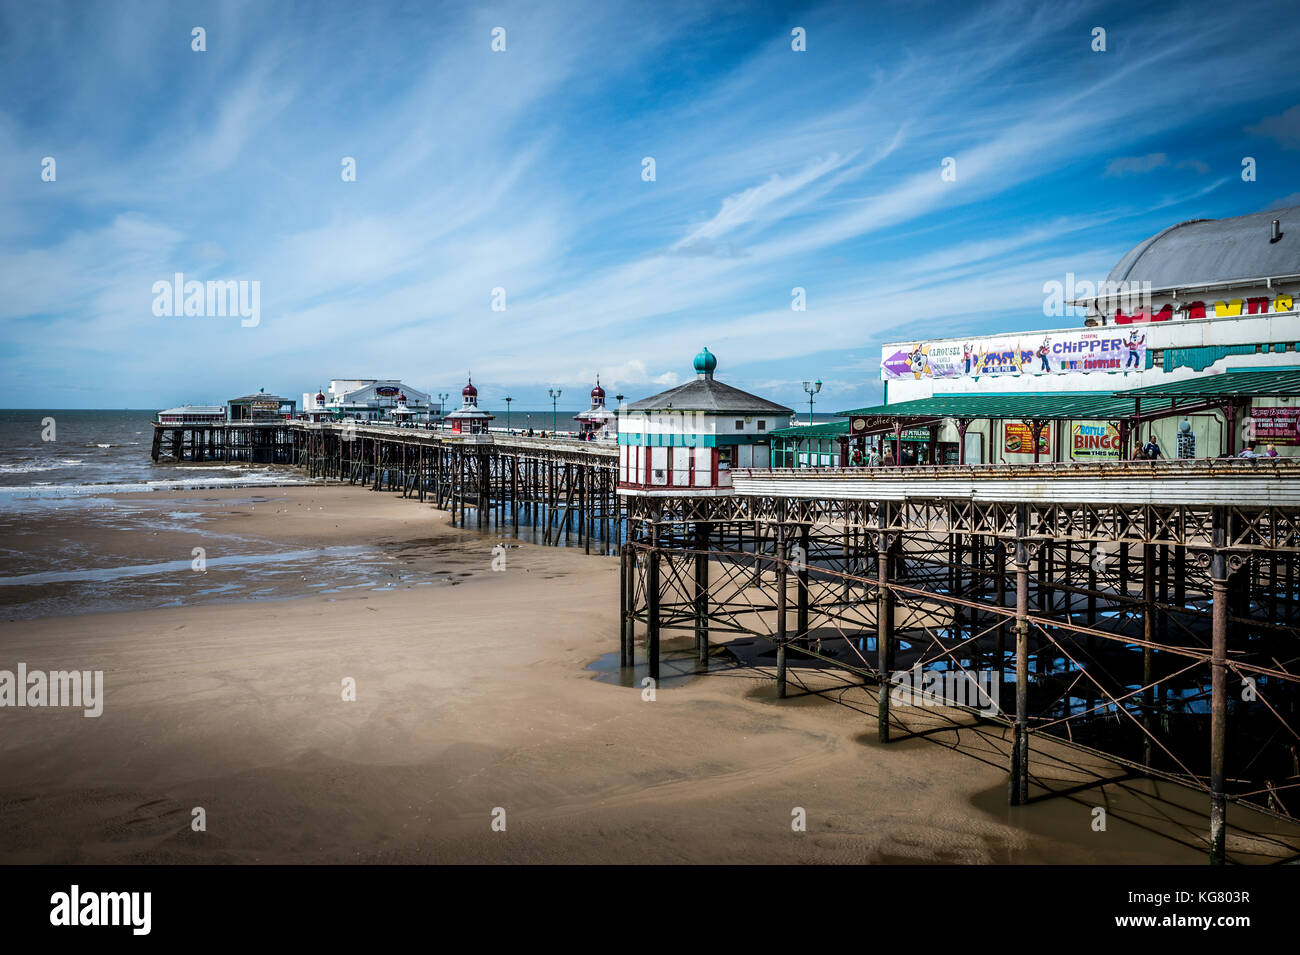 North Pier di Blackpool in una bella giornata di sole. Blackpool è la sola città nel Regno Unito ad avere 3 pontili Foto Stock